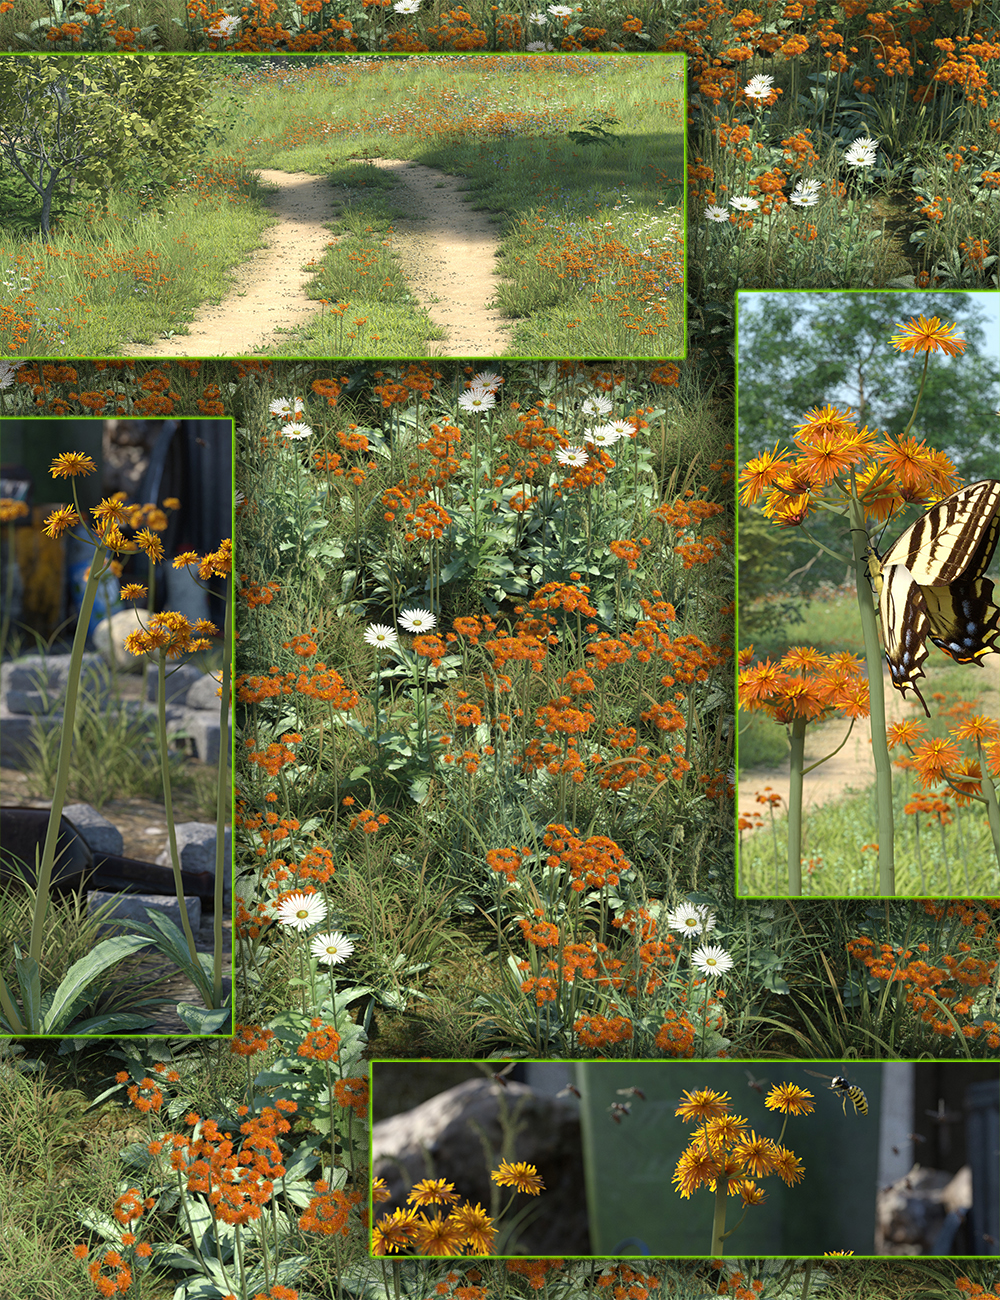 Meadow Flowers - Orange Hawkweed by: MartinJFrost, 3D Models by Daz 3D